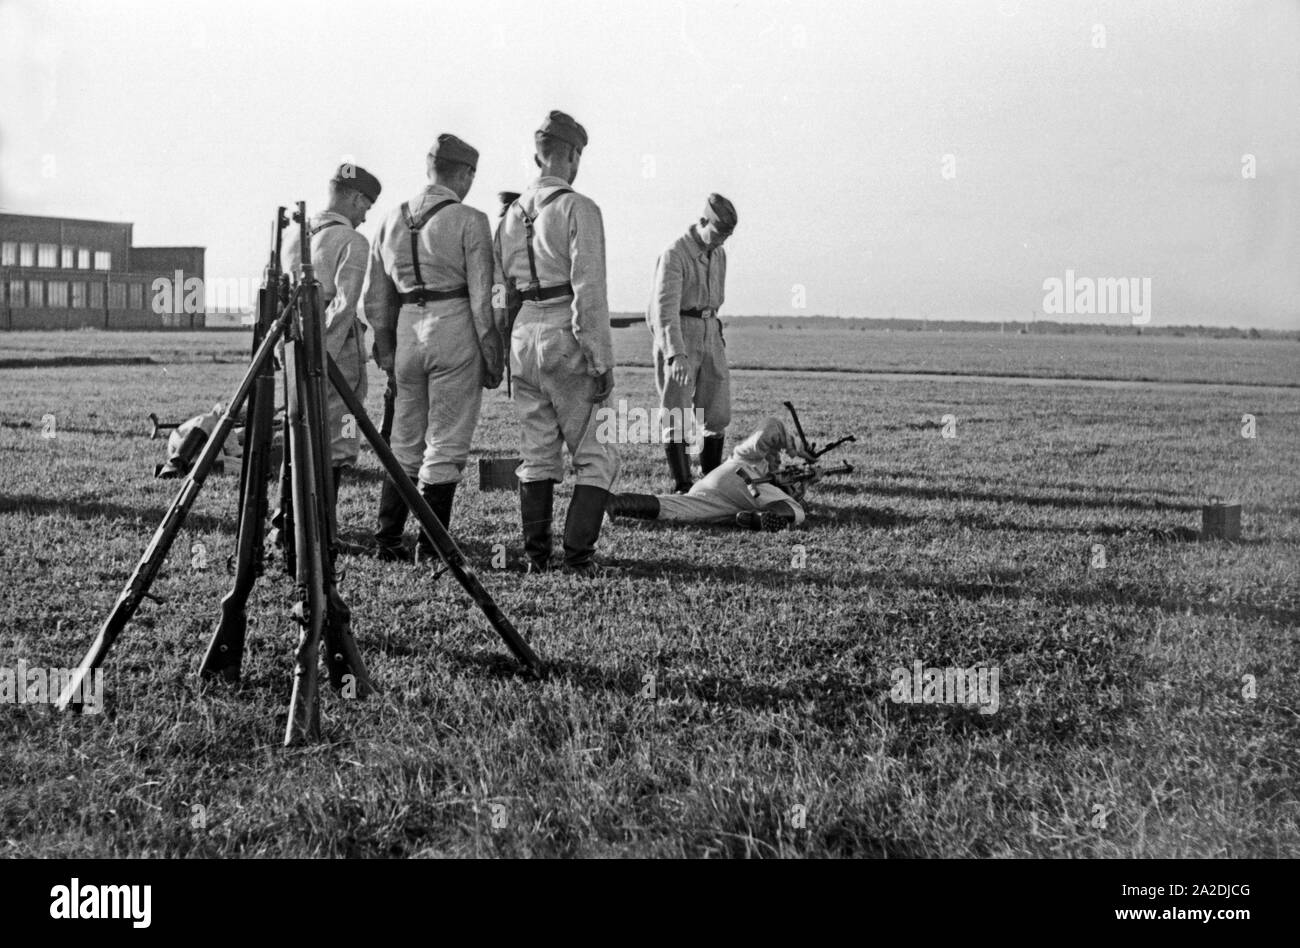 Rekruten der Flieger Ausbildungsstelle Schönwalde beim Übungsschießen mit dem Maschinengewehr MG 34, Deutschland 1930er Jahre. Recruits training with machine gun MG 34, Germany 1930s. Stock Photo